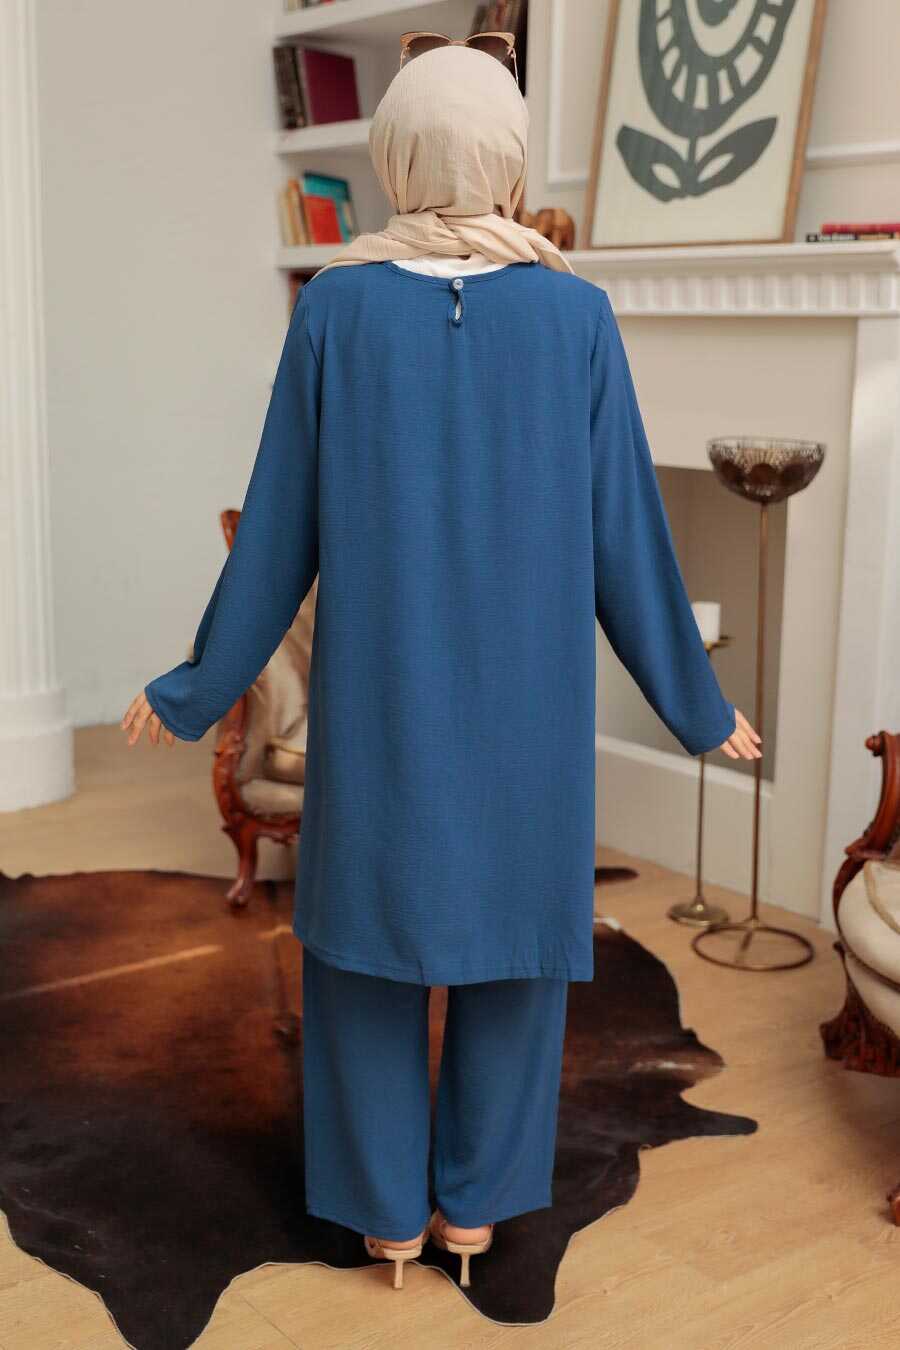 Petrol Blue Hijab Suit Dress 7687PM